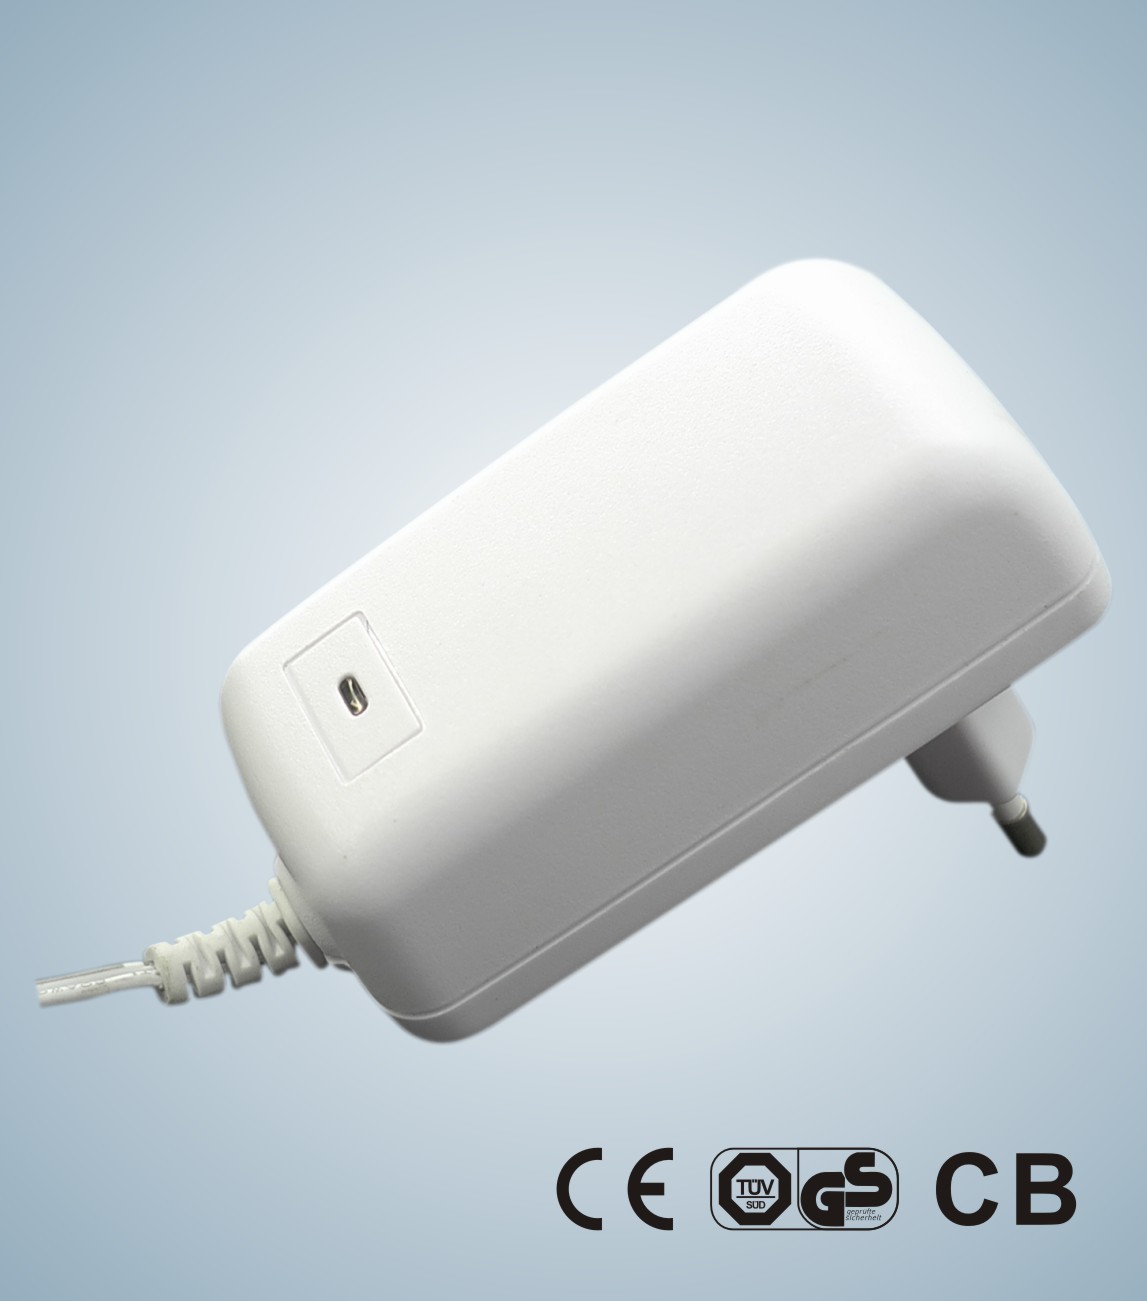 adaptadores do poder do interruptor de 20W KSAP020xxxyyyyHEC com CB de 12VDC 0.1-2A, CE, aprovação da segurança do GS para o uso geral de I.T.E